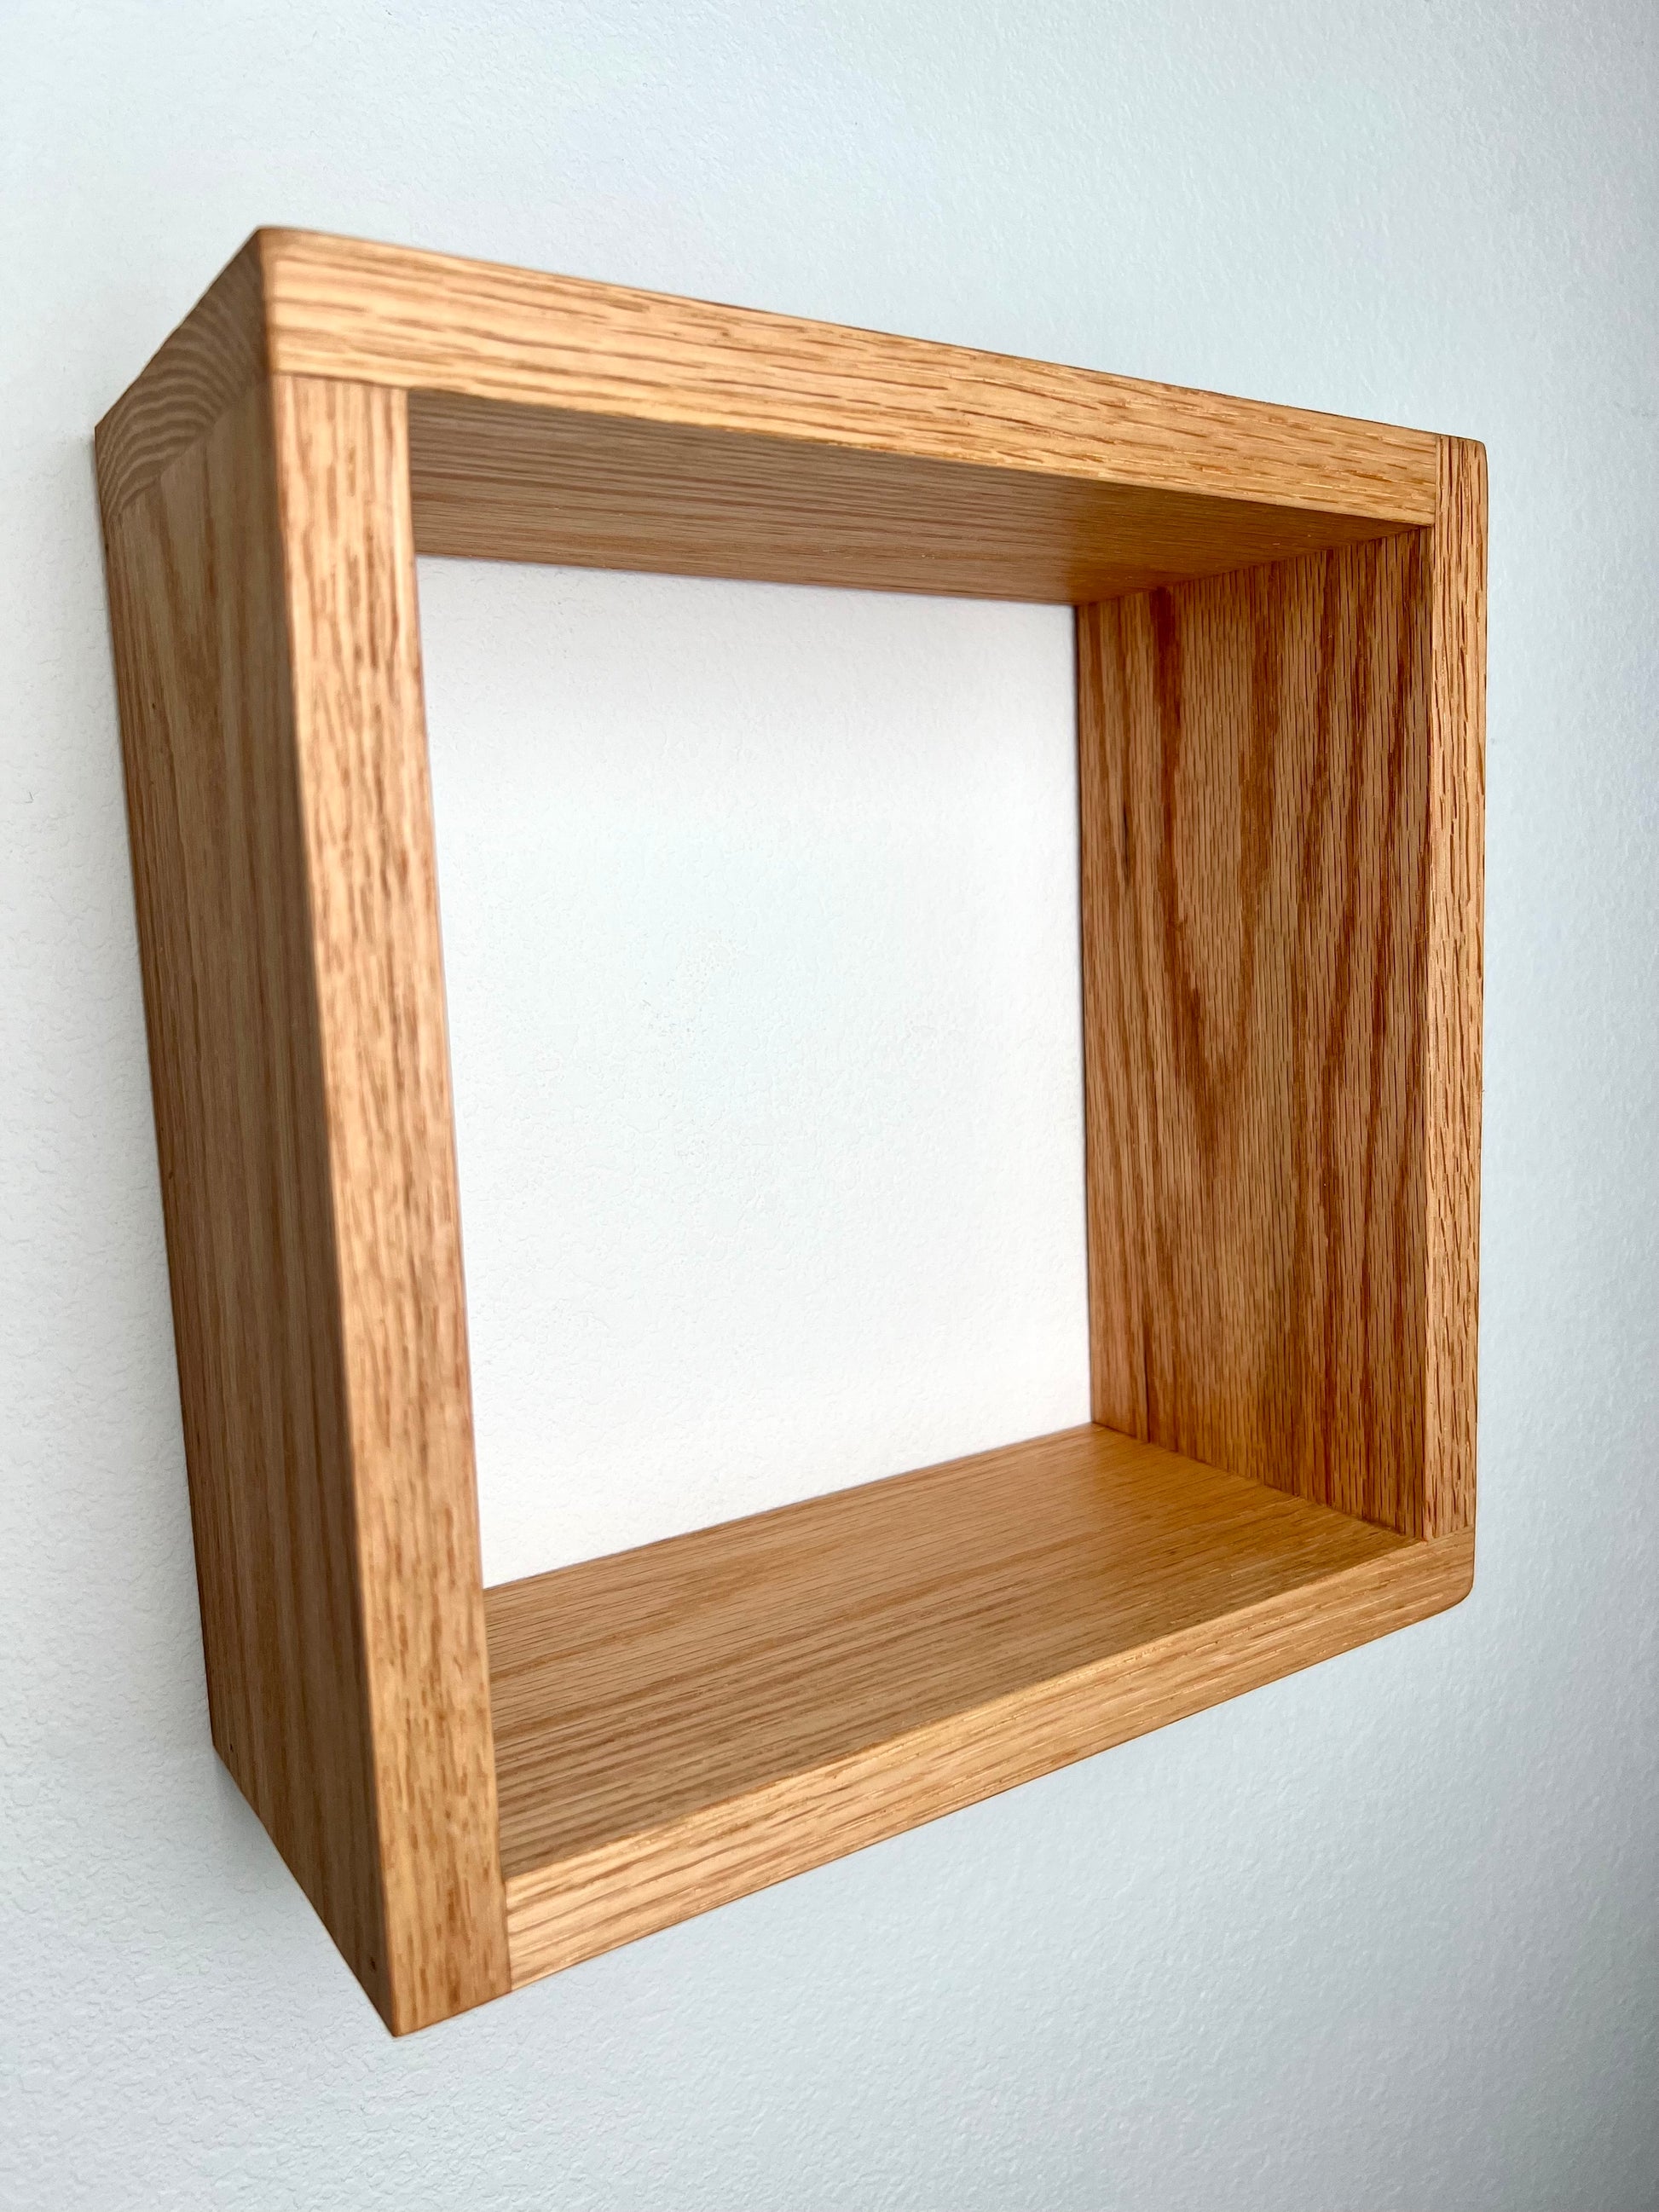 Wood Box Shelves